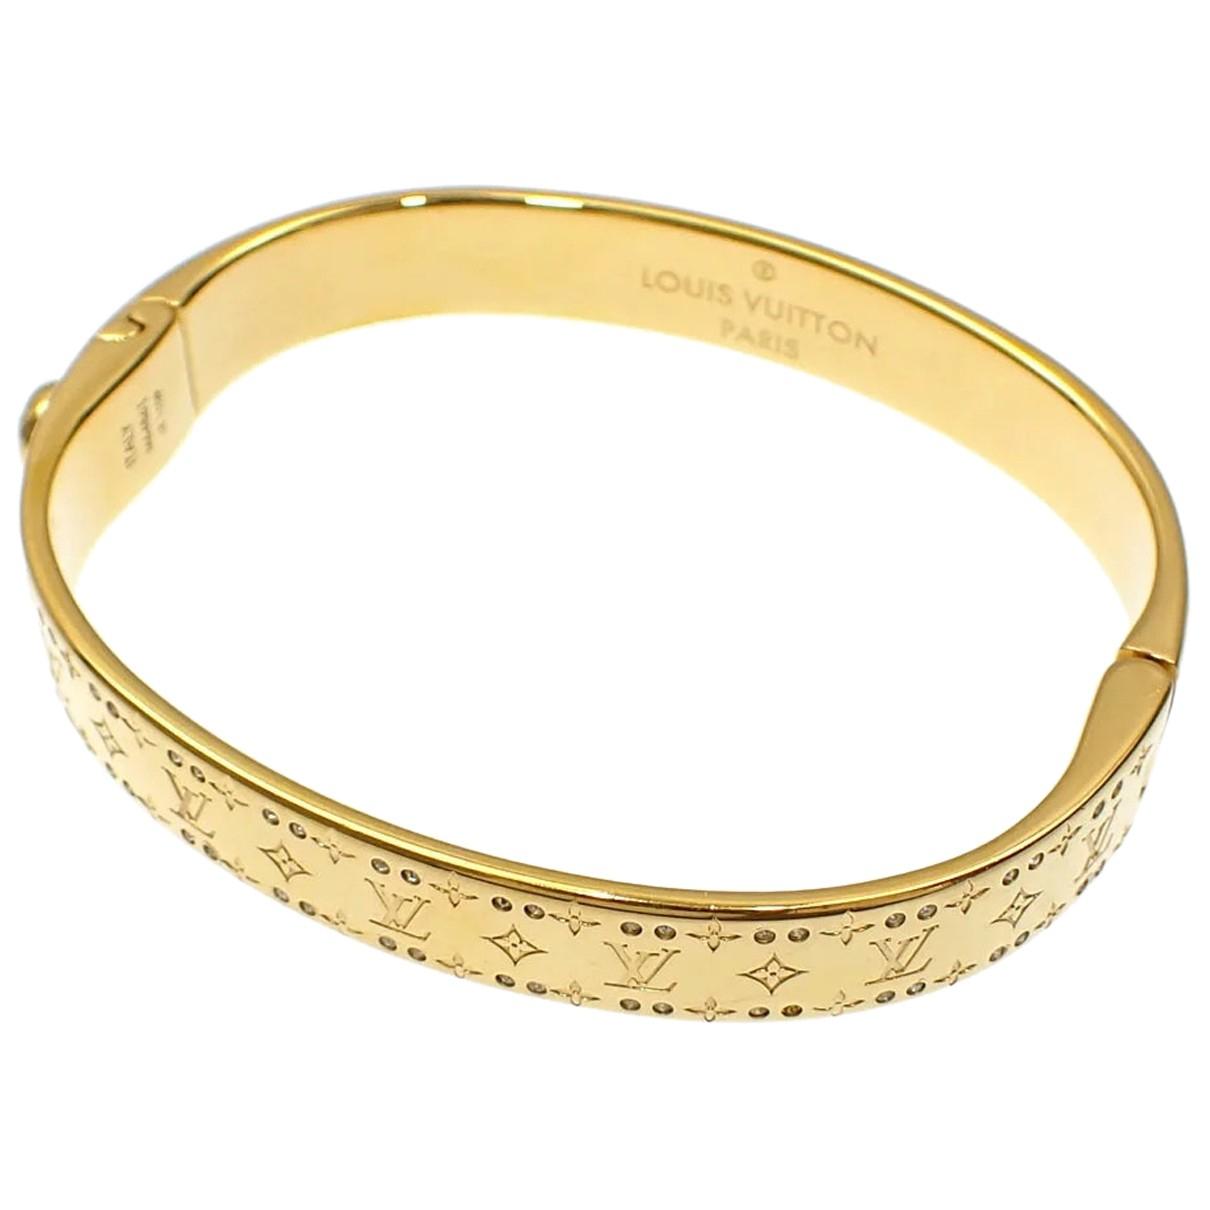 Bracelet Louis Vuitton Gold in Not specified - 25087212